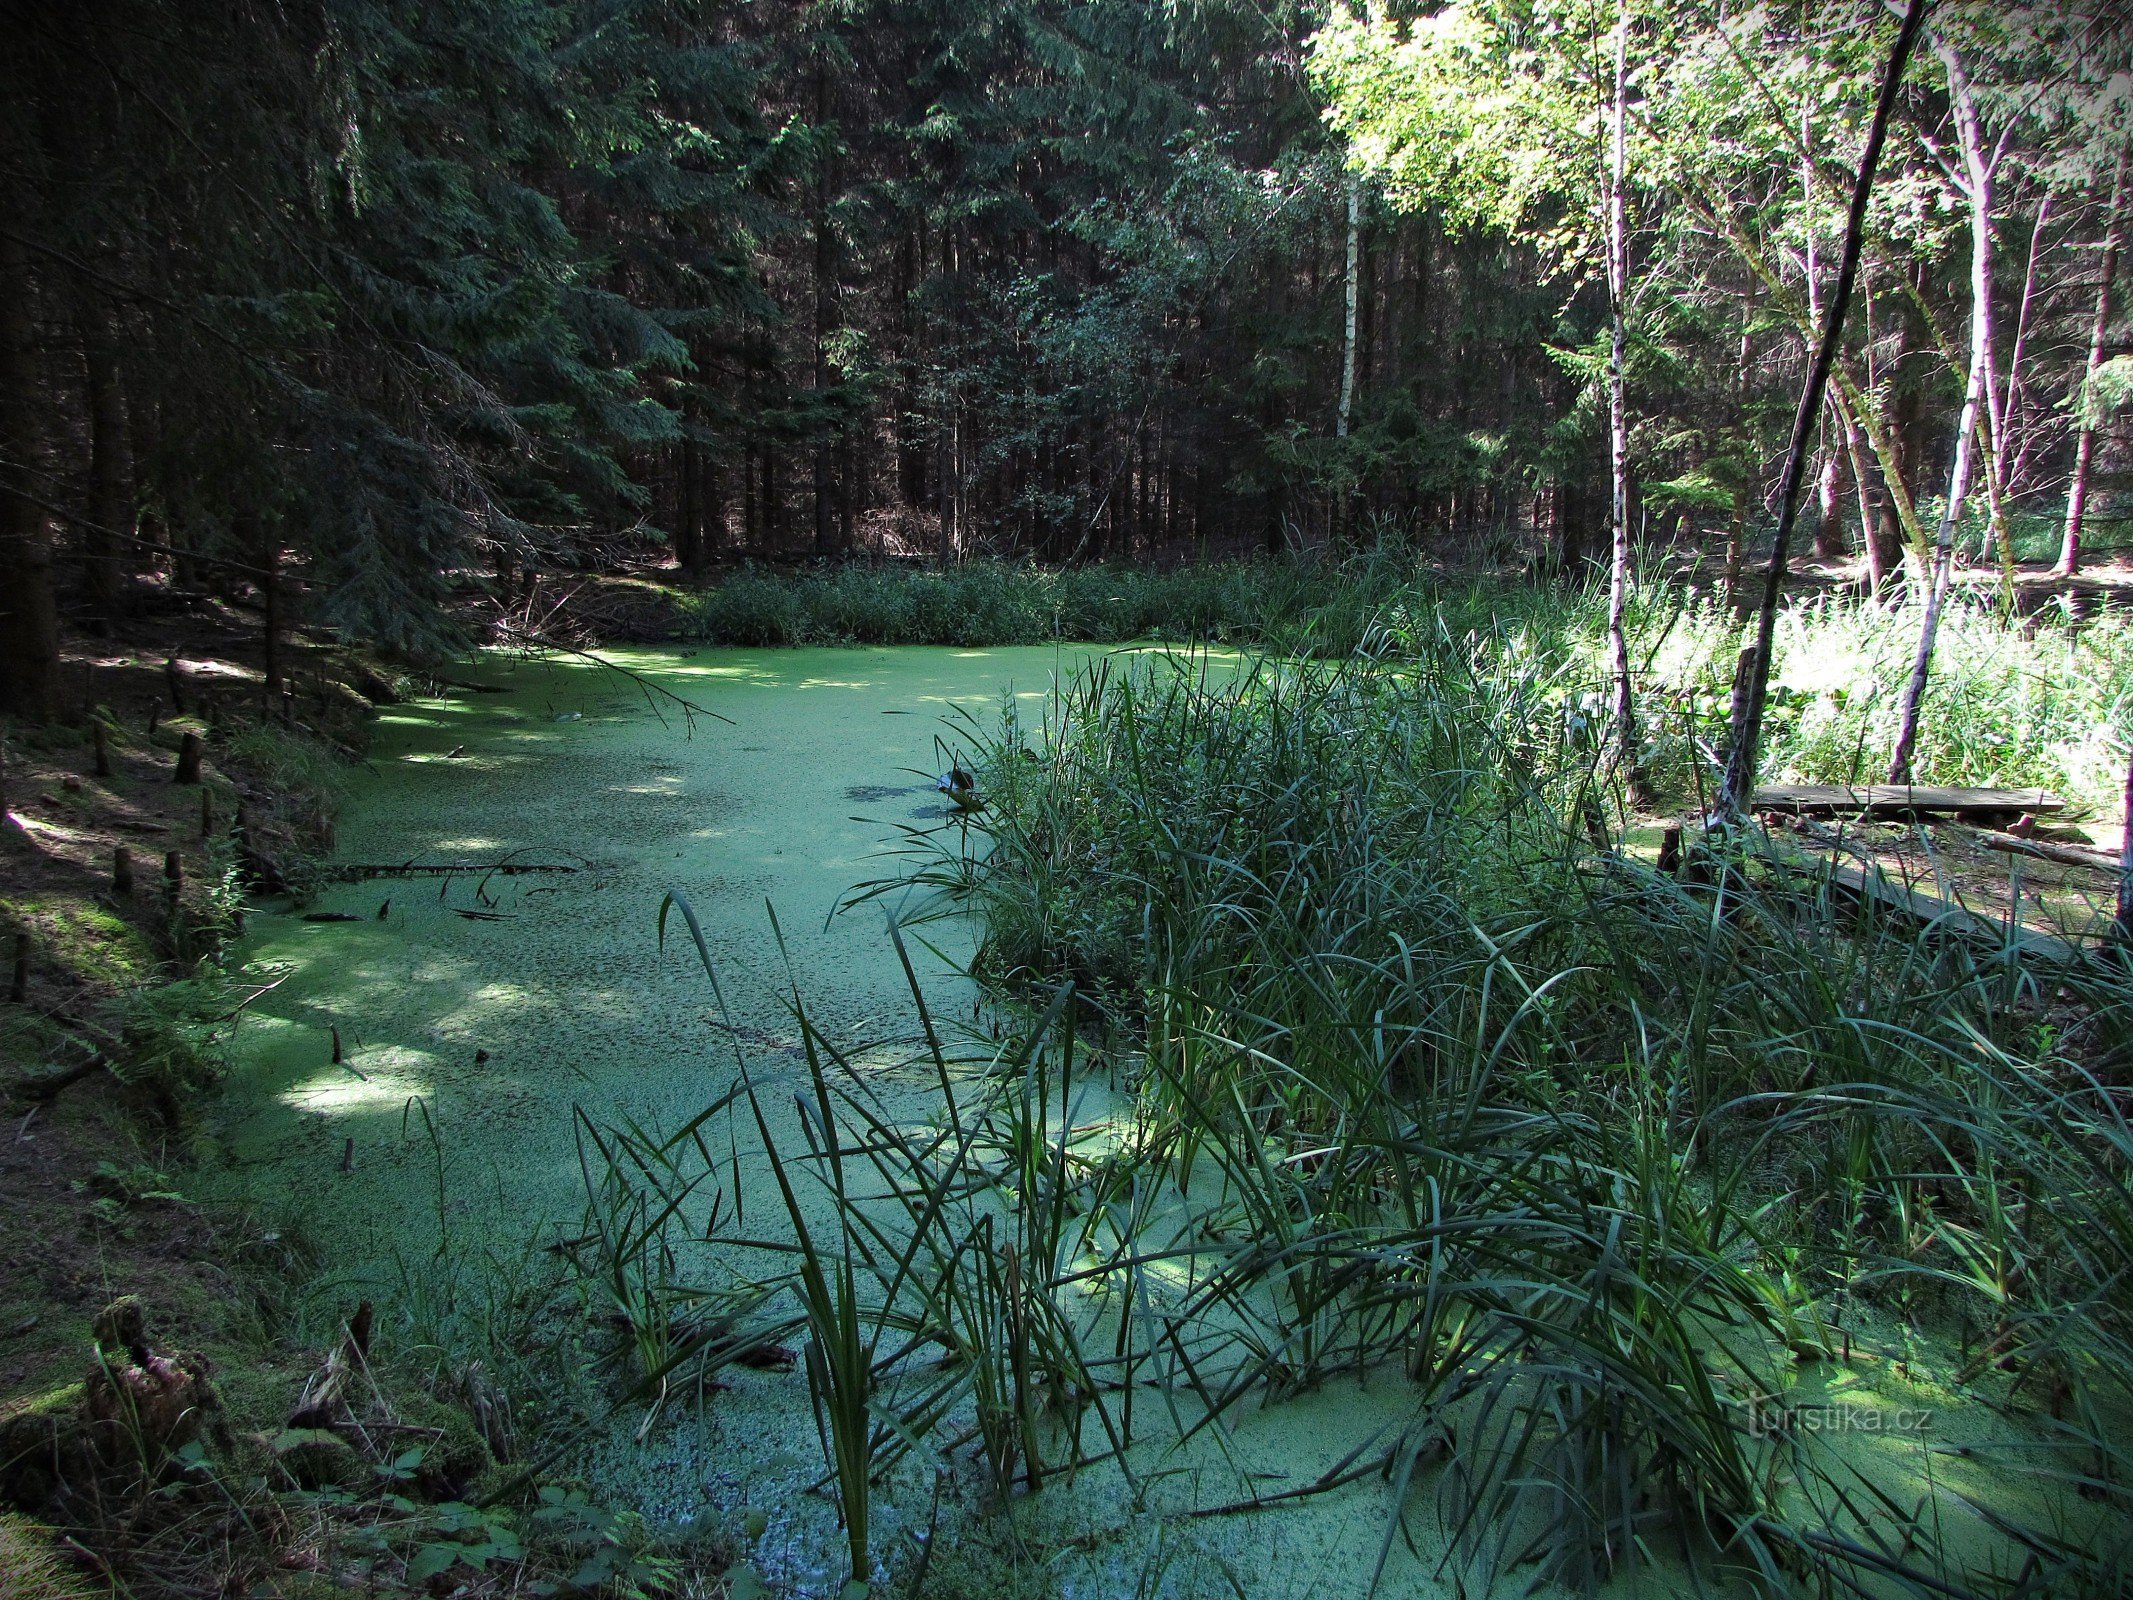 ツルニチニチソウの森の池